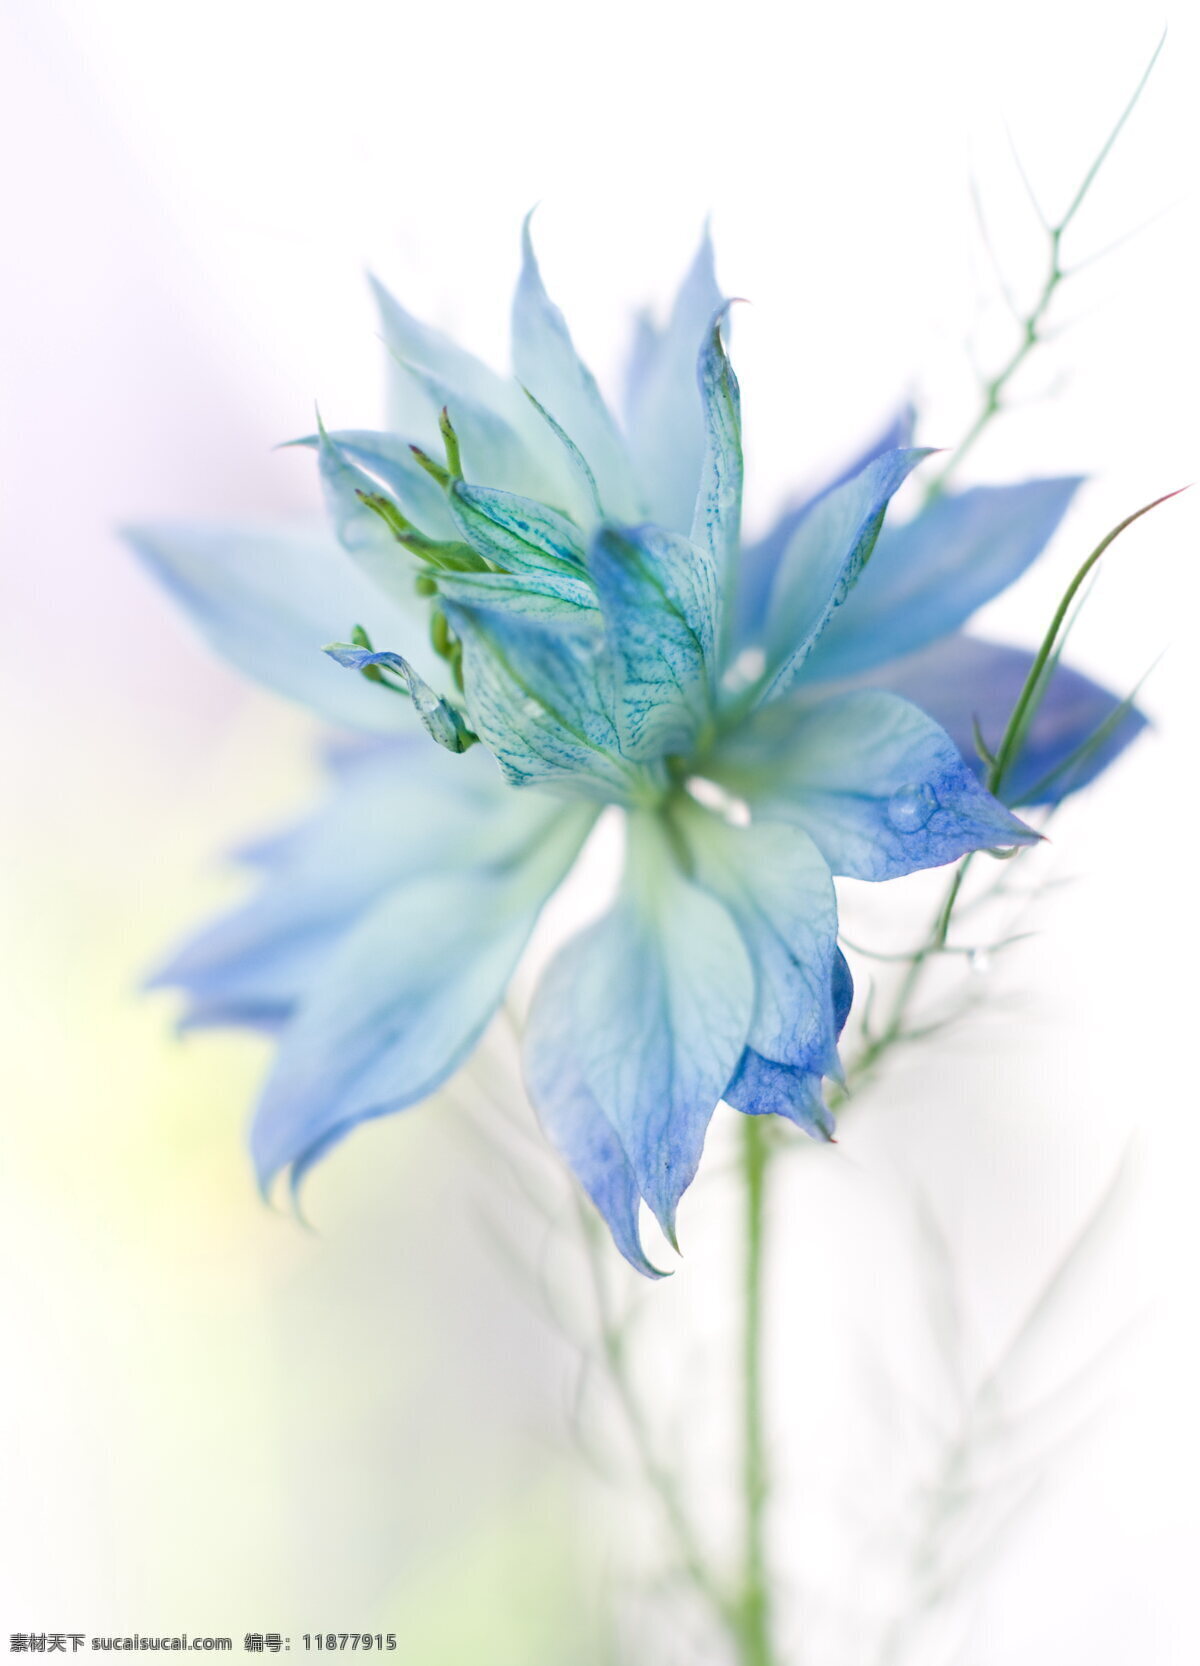 蓝色 淡雅 花朵 蓝色花朵 淡雅花朵 鲜花 花瓣 唯美花朵 素雅花朵 花卉 花草 植物 静物花朵 生物世界 白色